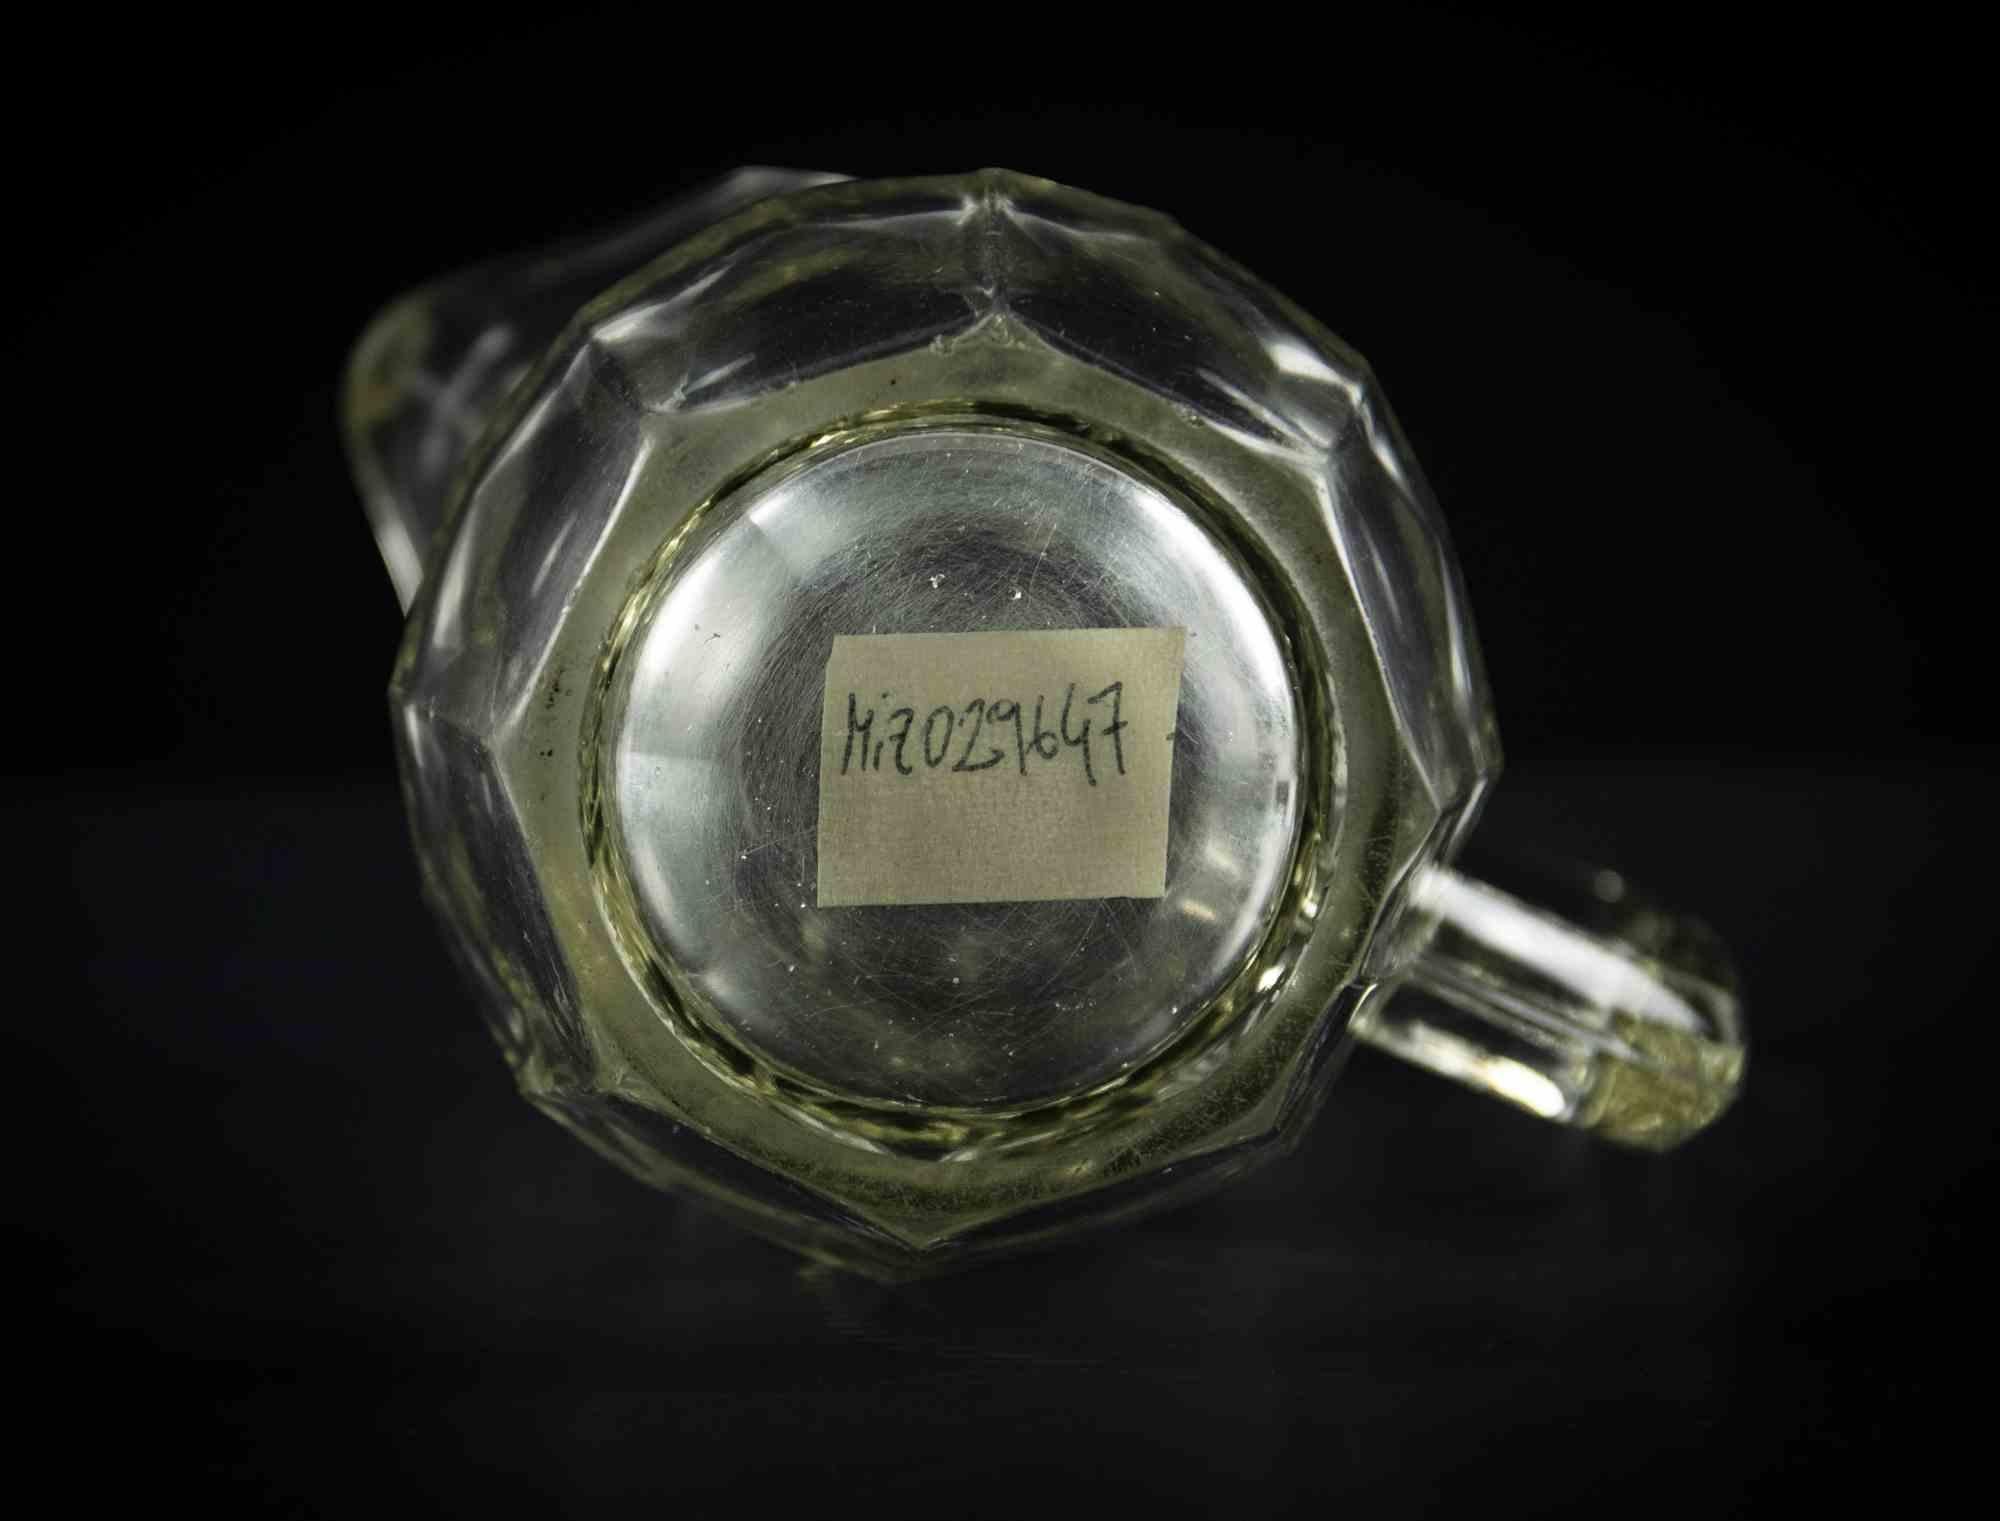 Le pichet en verre vintage est un objet décoratif original réalisé dans la moitié du 20e siècle.

Un pichet en verre transparent très élégant, parfait pour servir des boissons.

Bonnes conditions sauf pour le verre légèrement opaque.